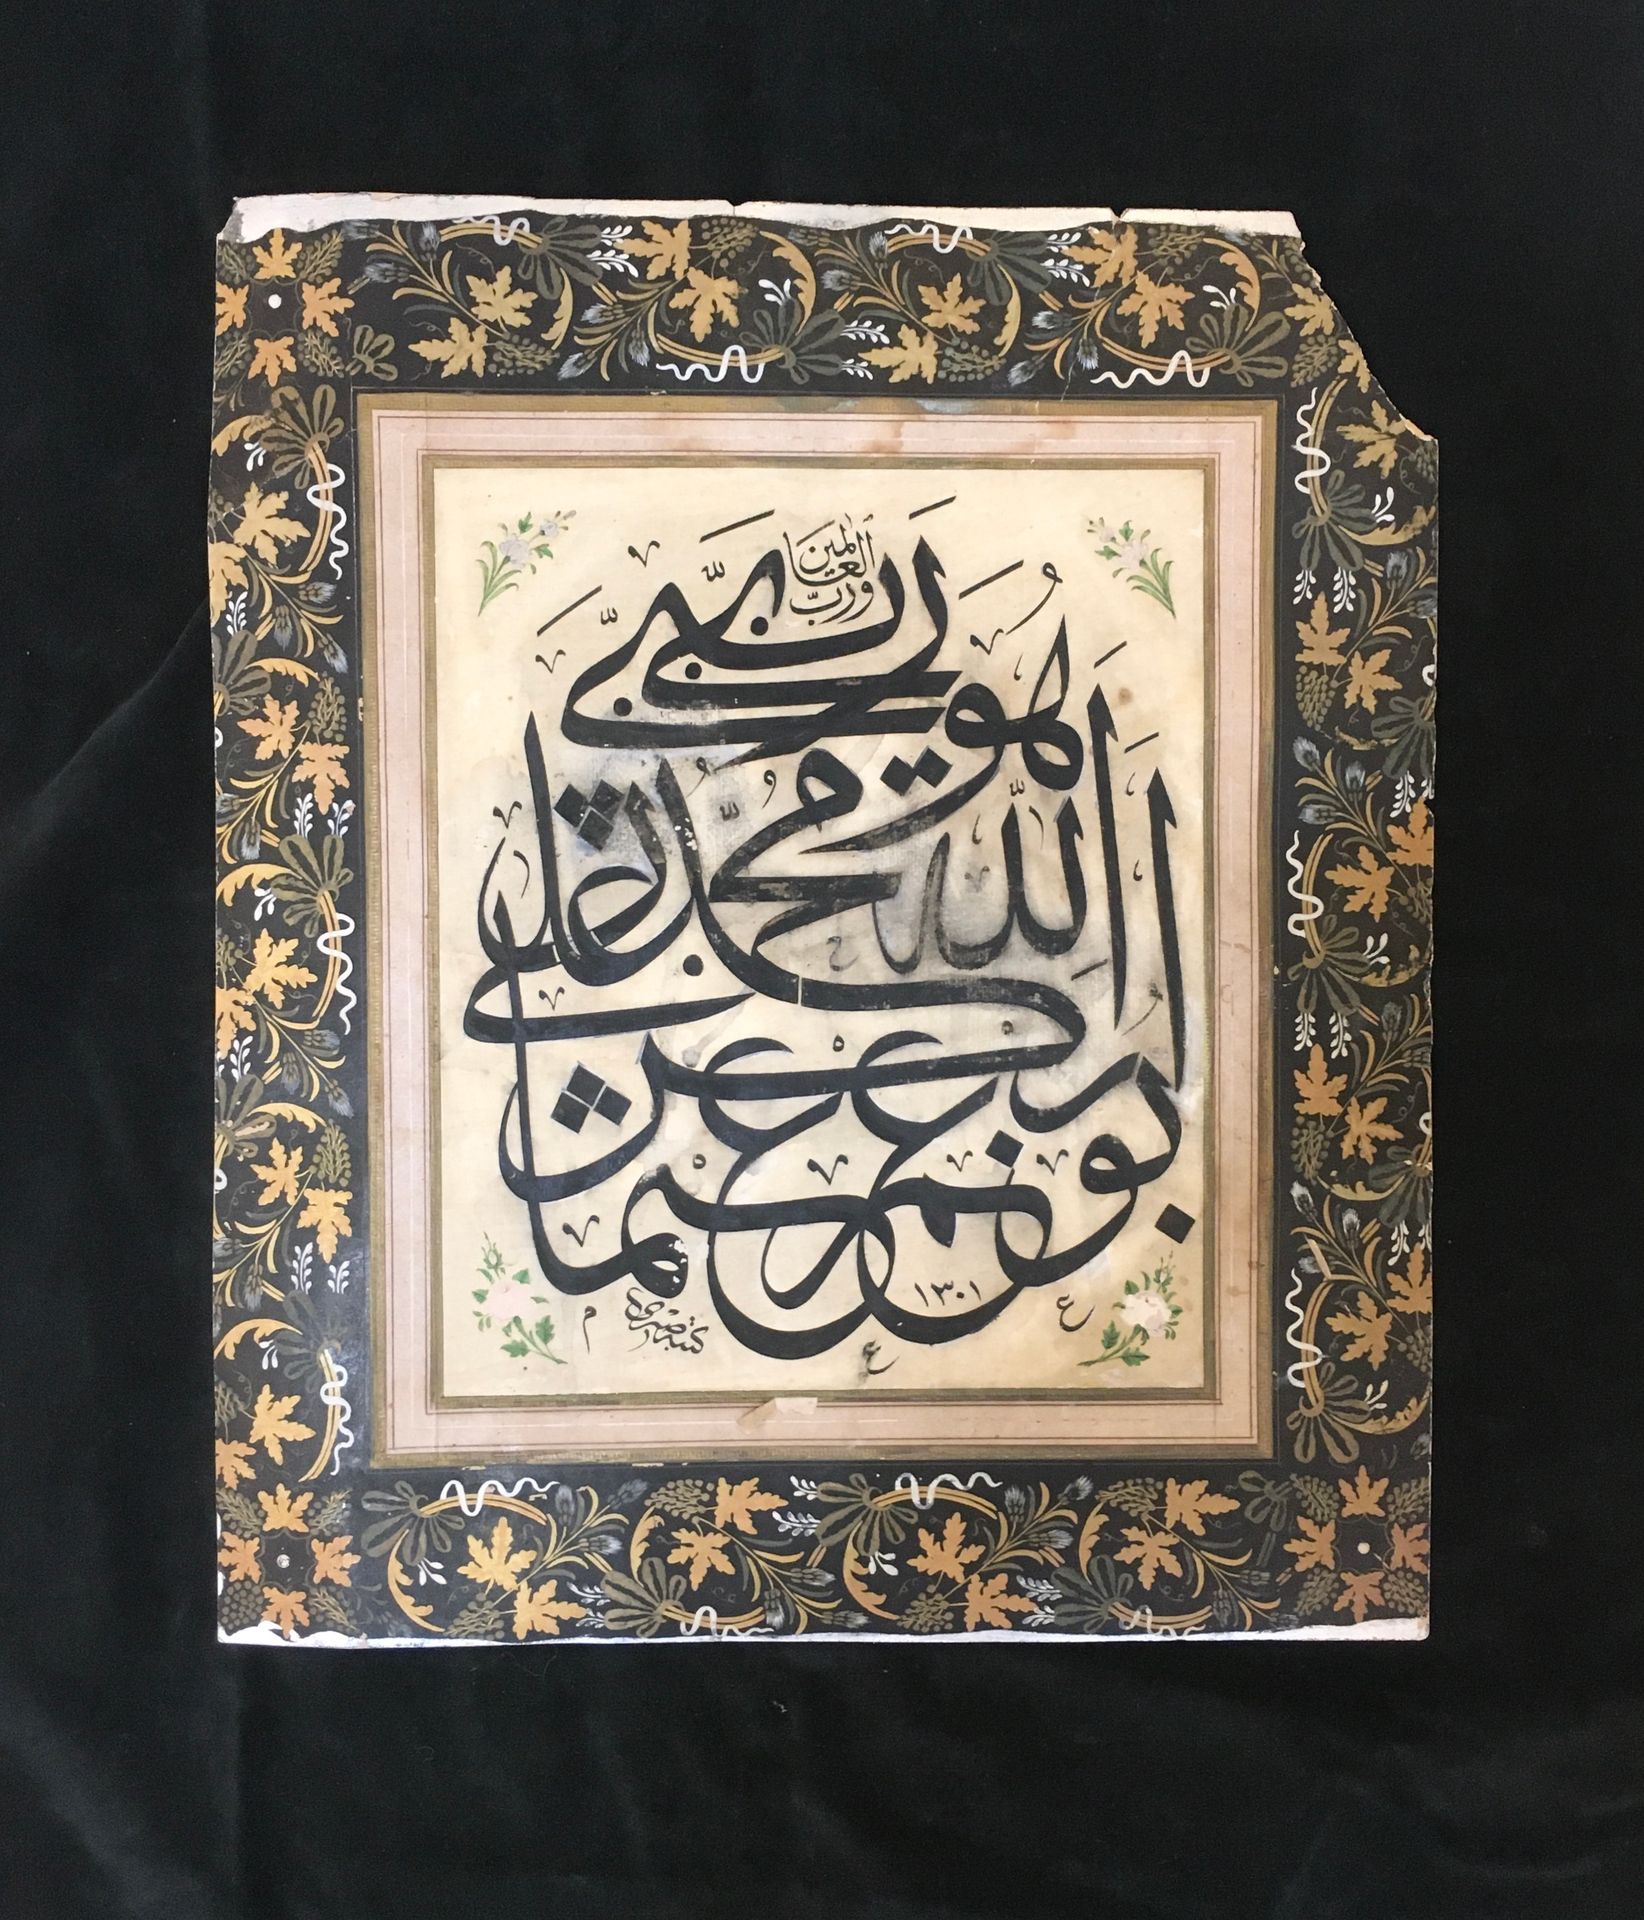 Calligraphie signée Sabri et datée 1301H. '''= 1883 titrée "Al-'alamein wa hab",&hellip;